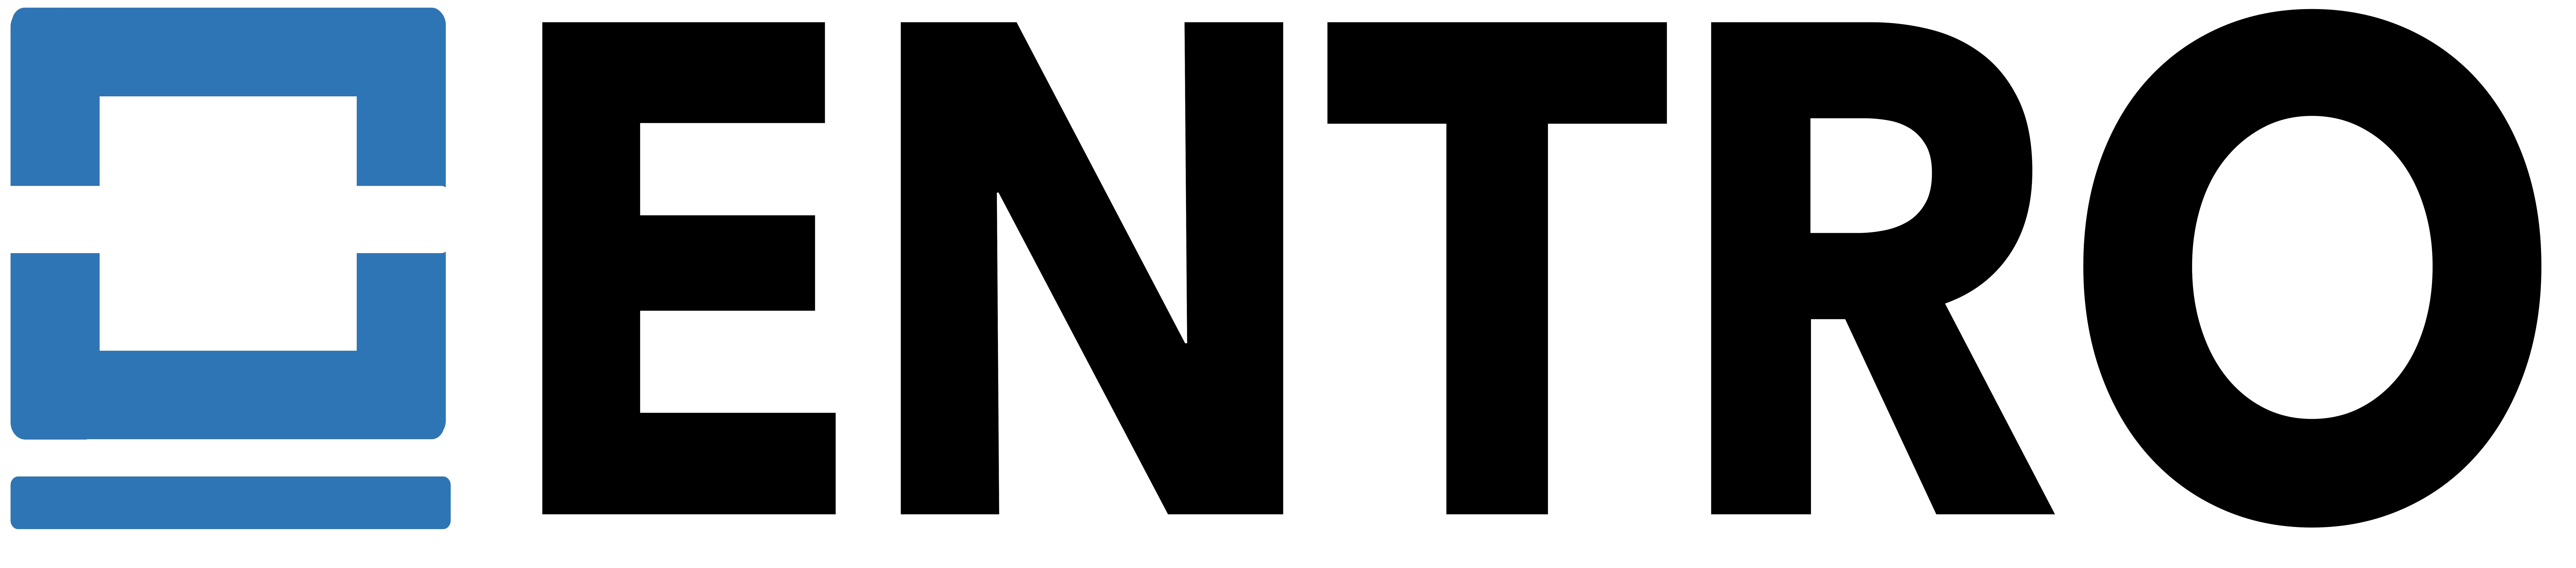 the entro logo